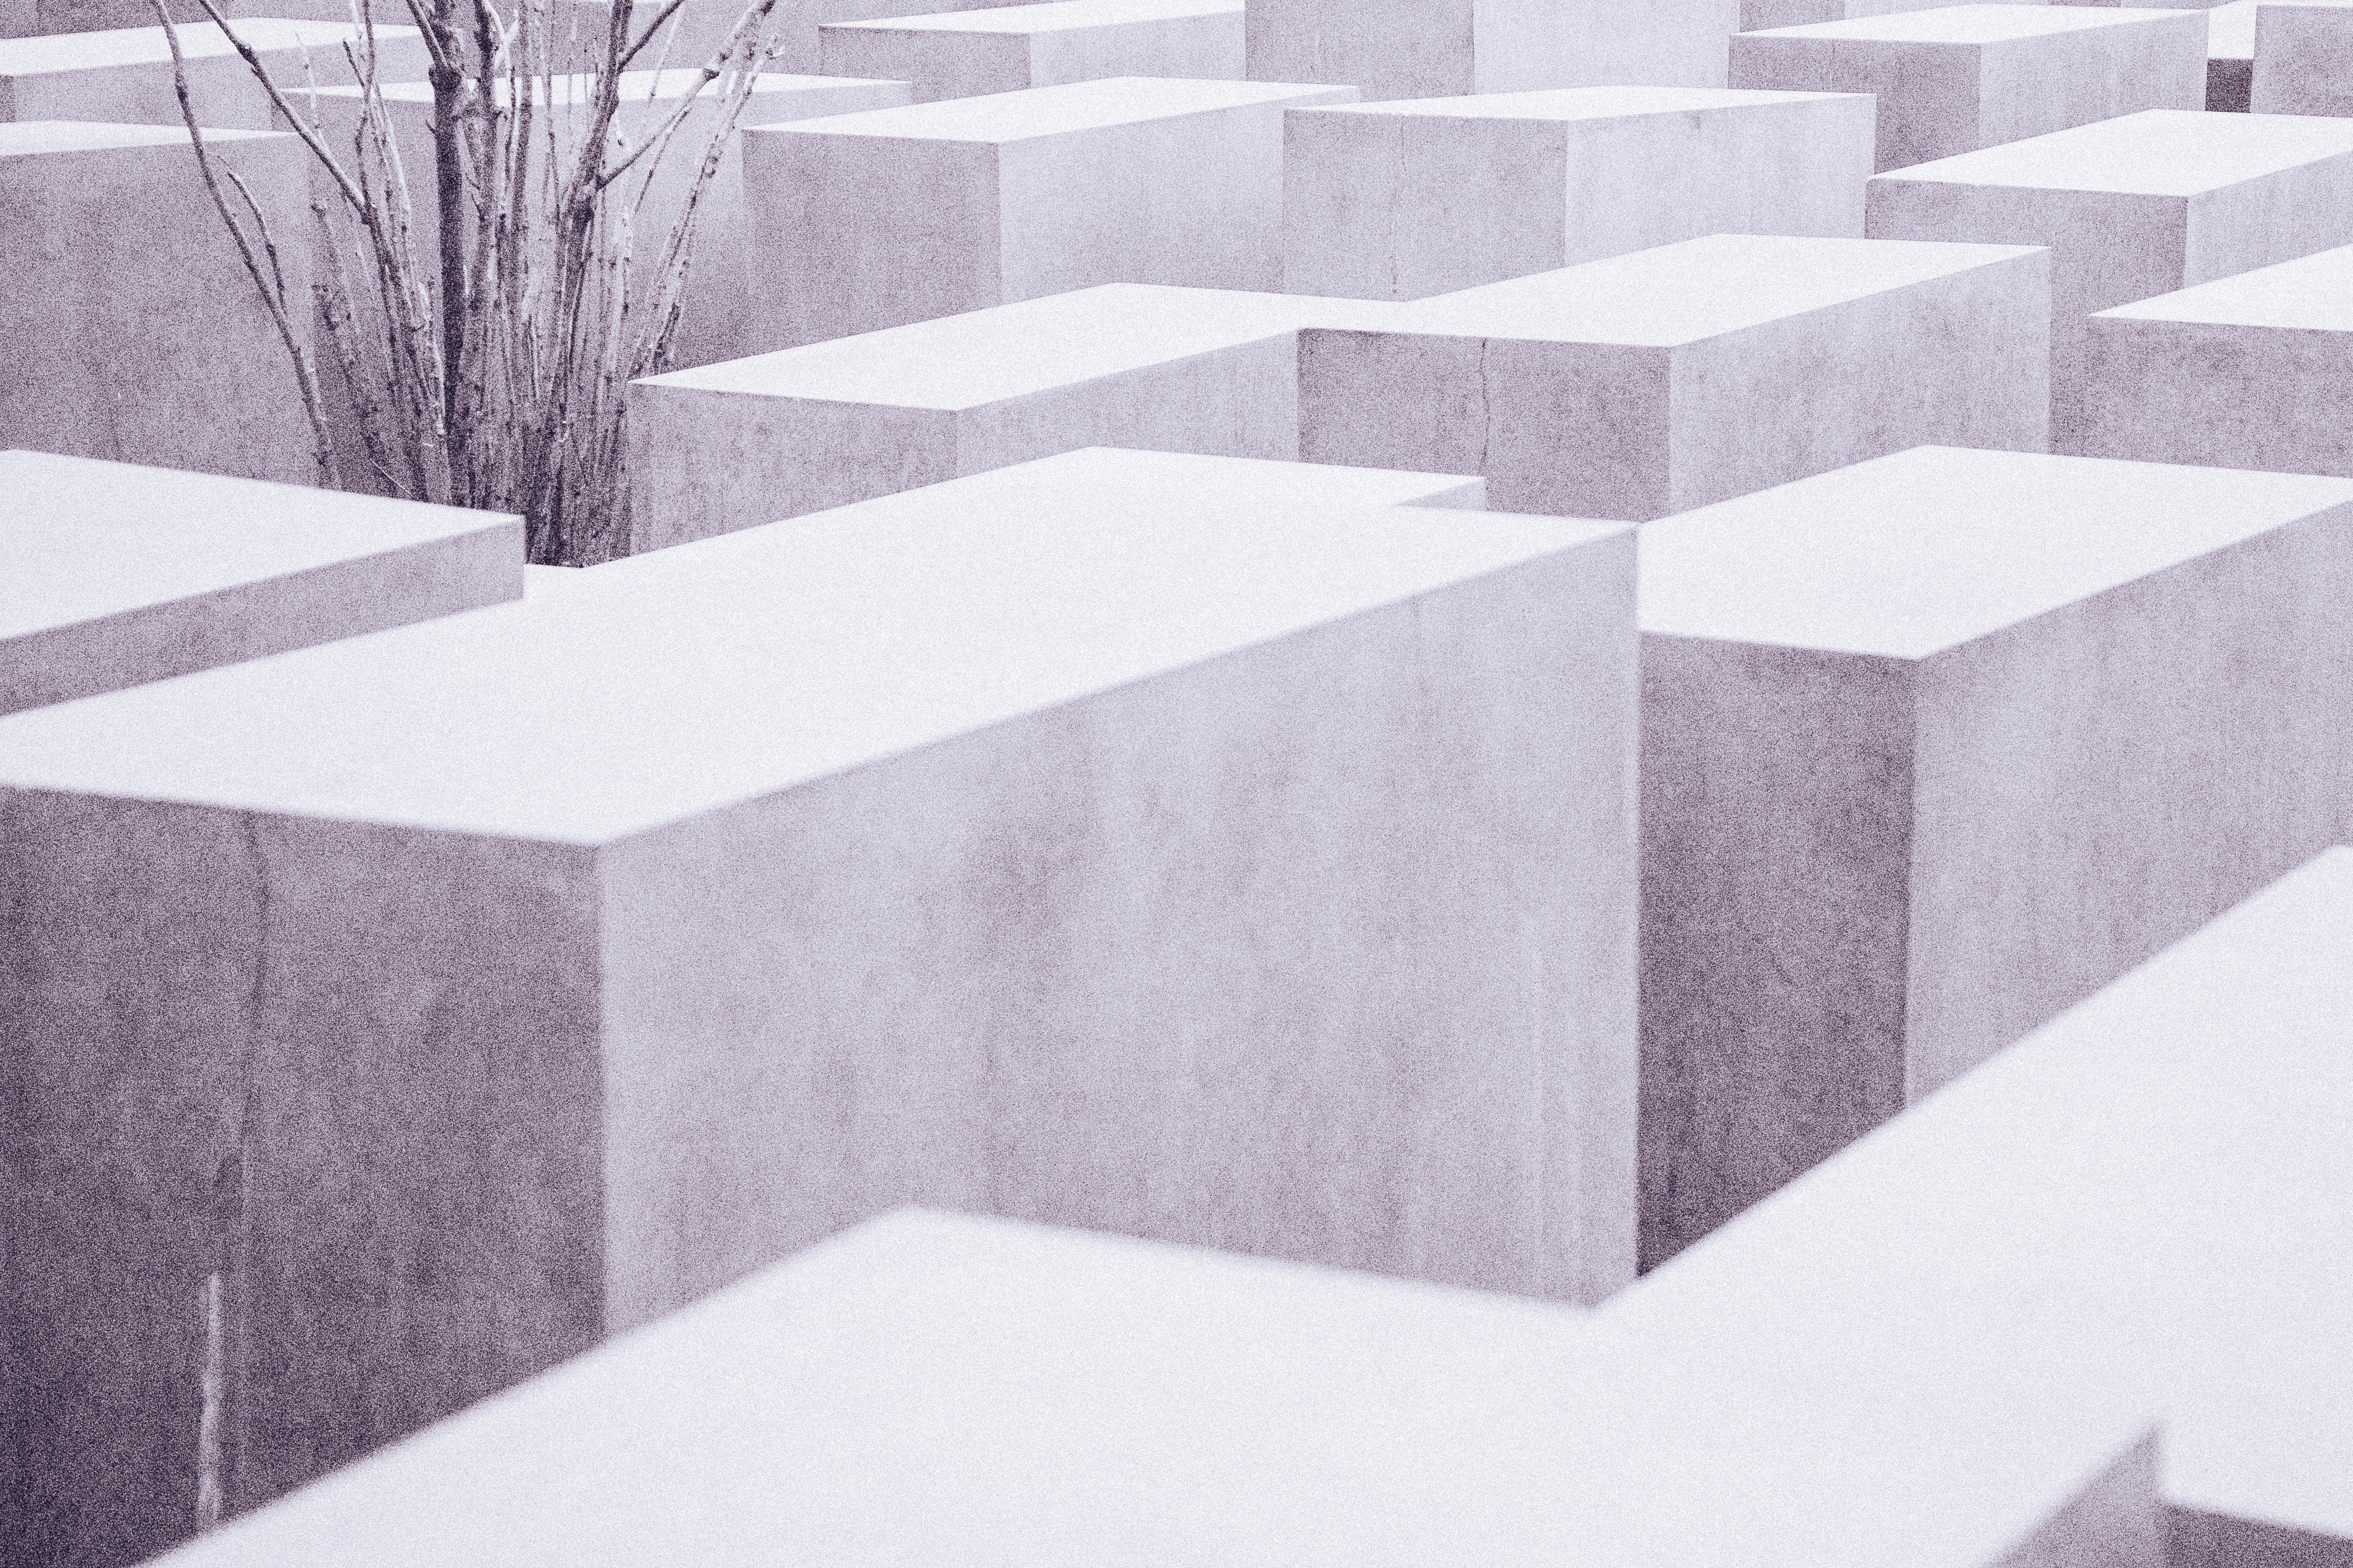 white concrete blocks